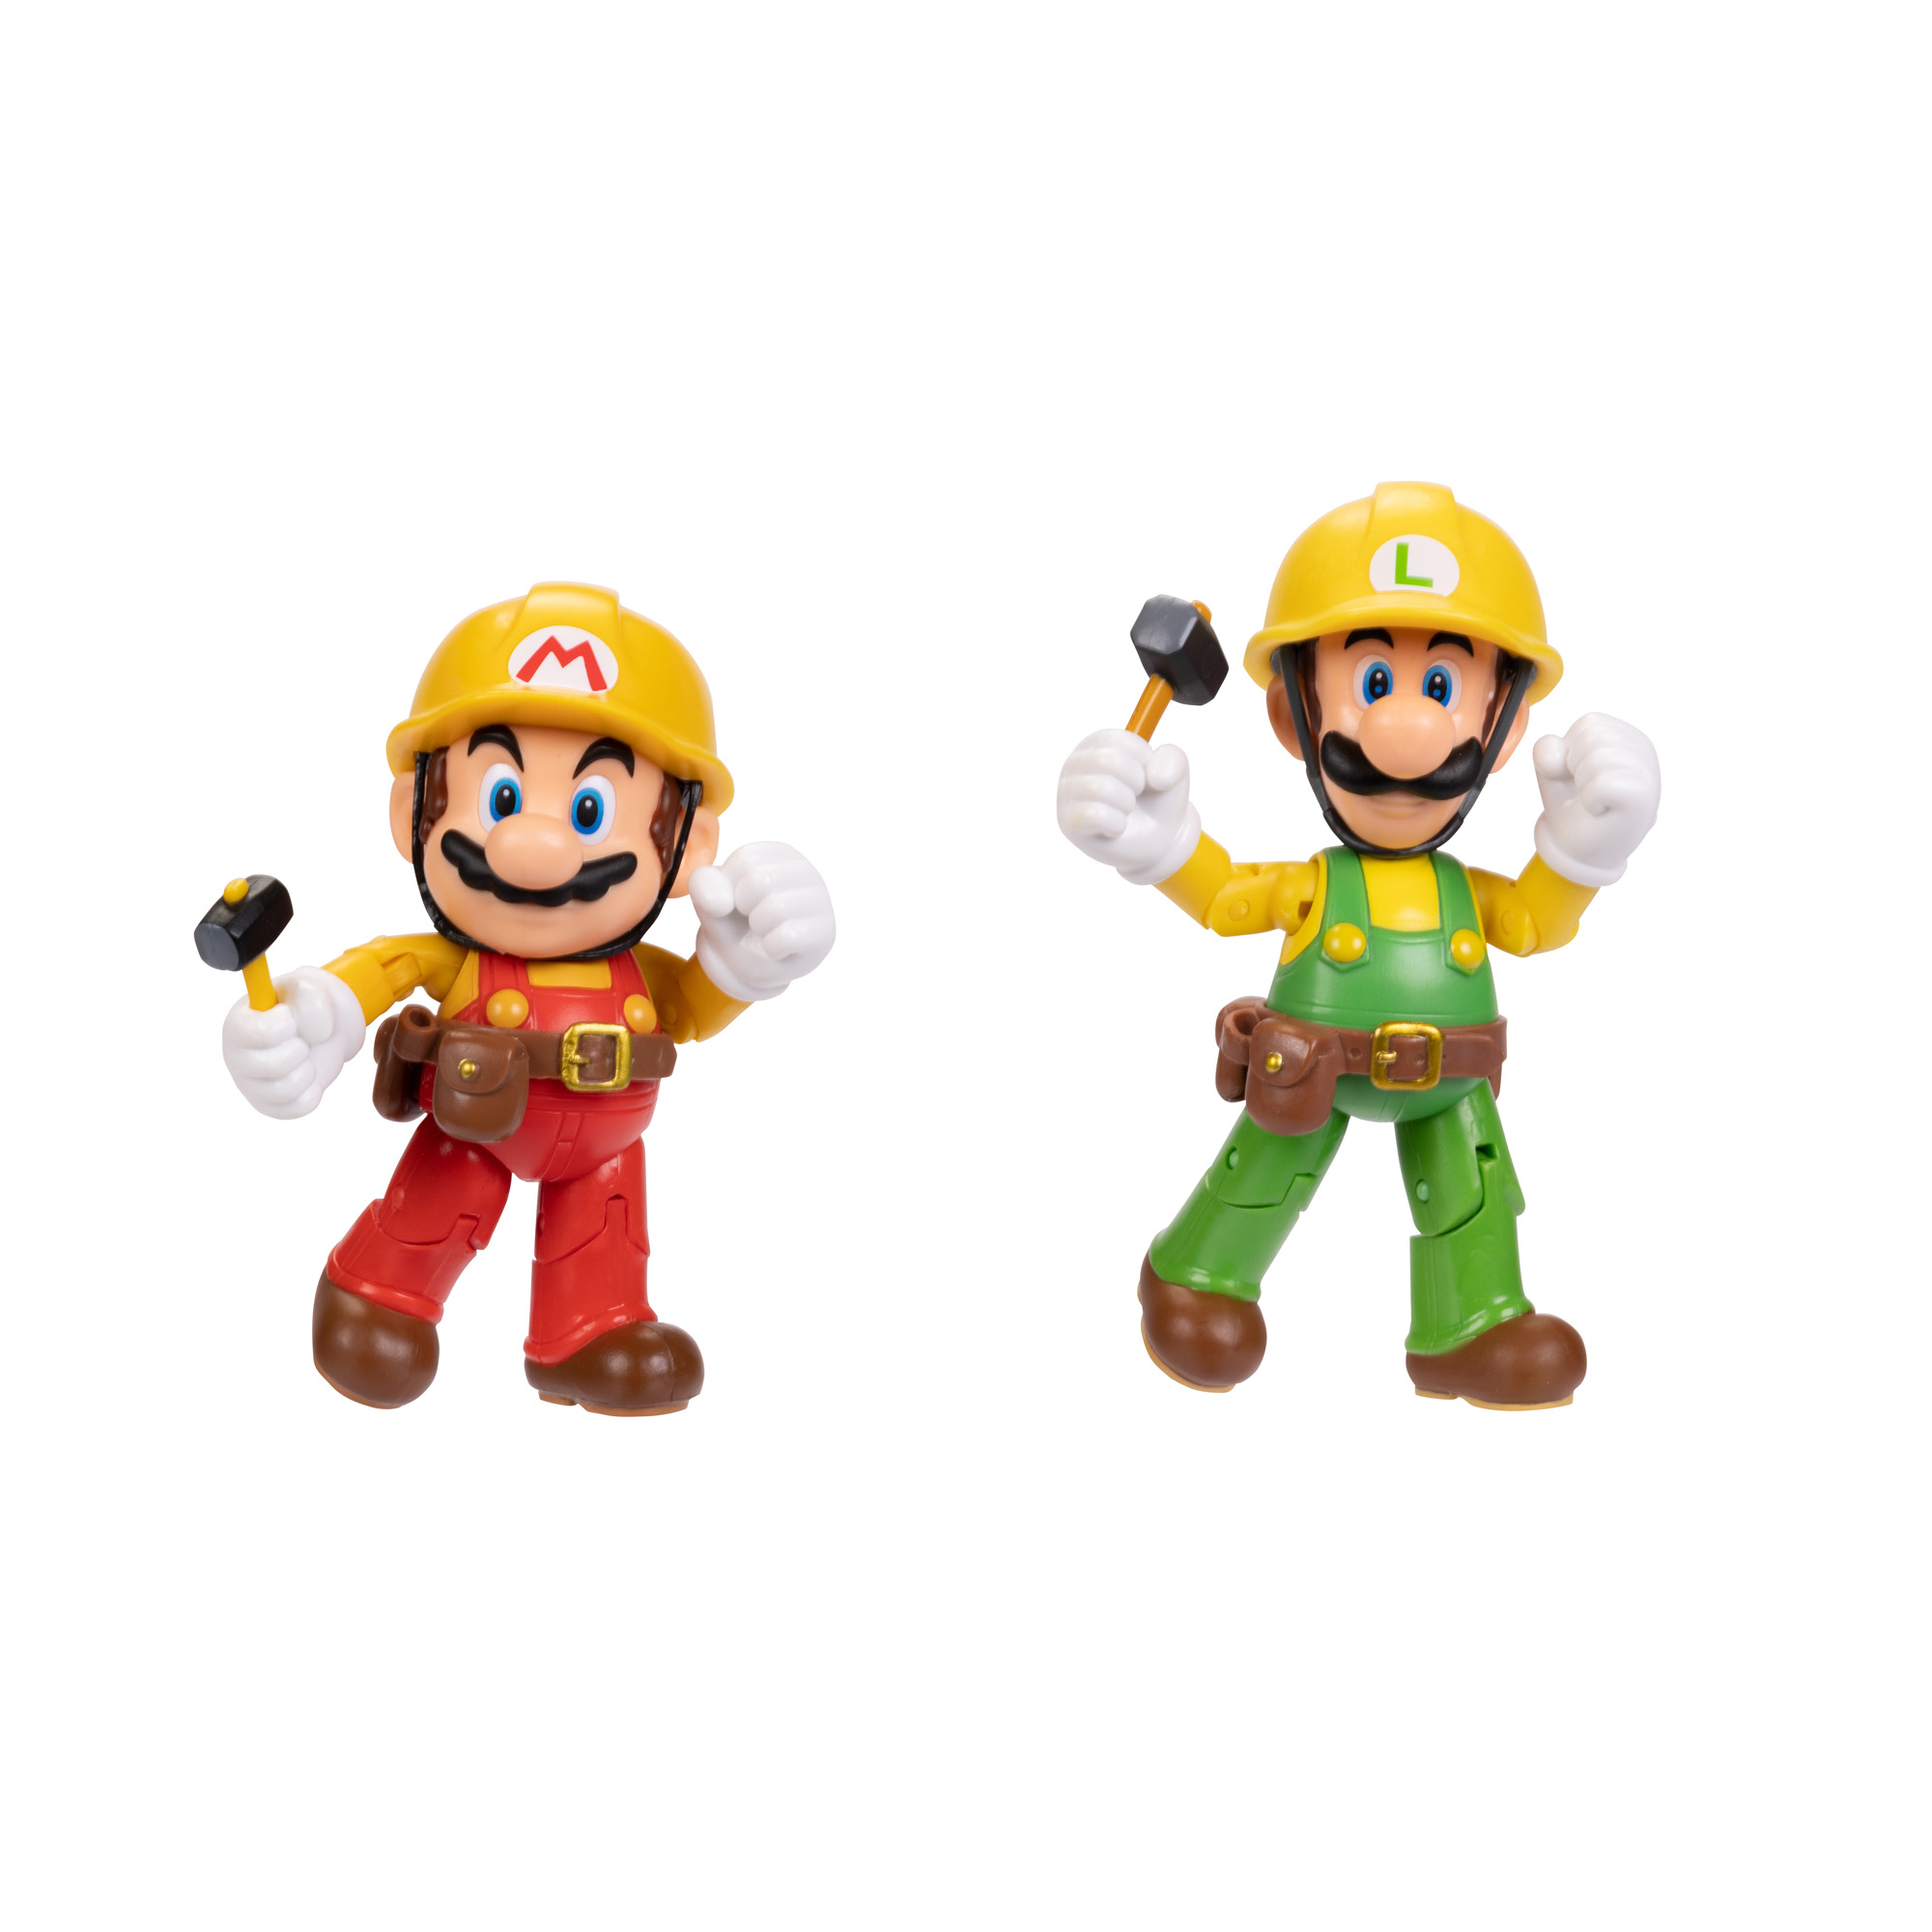 Maker, Nintendo Super Maker Figuren & Mario 10cm MARIO Spielware 2er-Pack: SUPER Luigi Mario